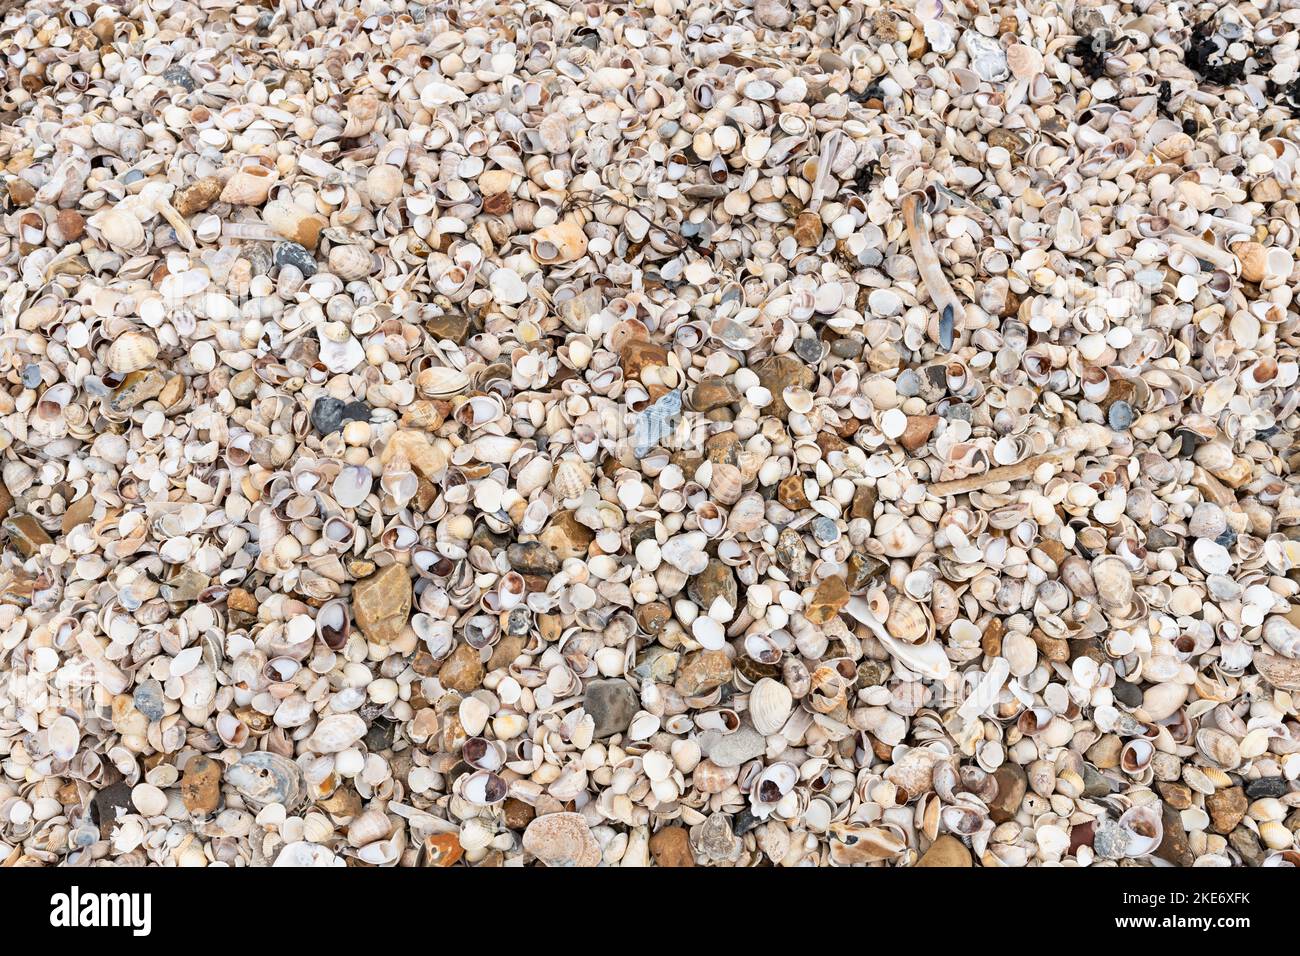 Coquilles faisant la plage de Shellness, Leysdown on Sea, Kent, Angleterre, Royaume-Uni Banque D'Images